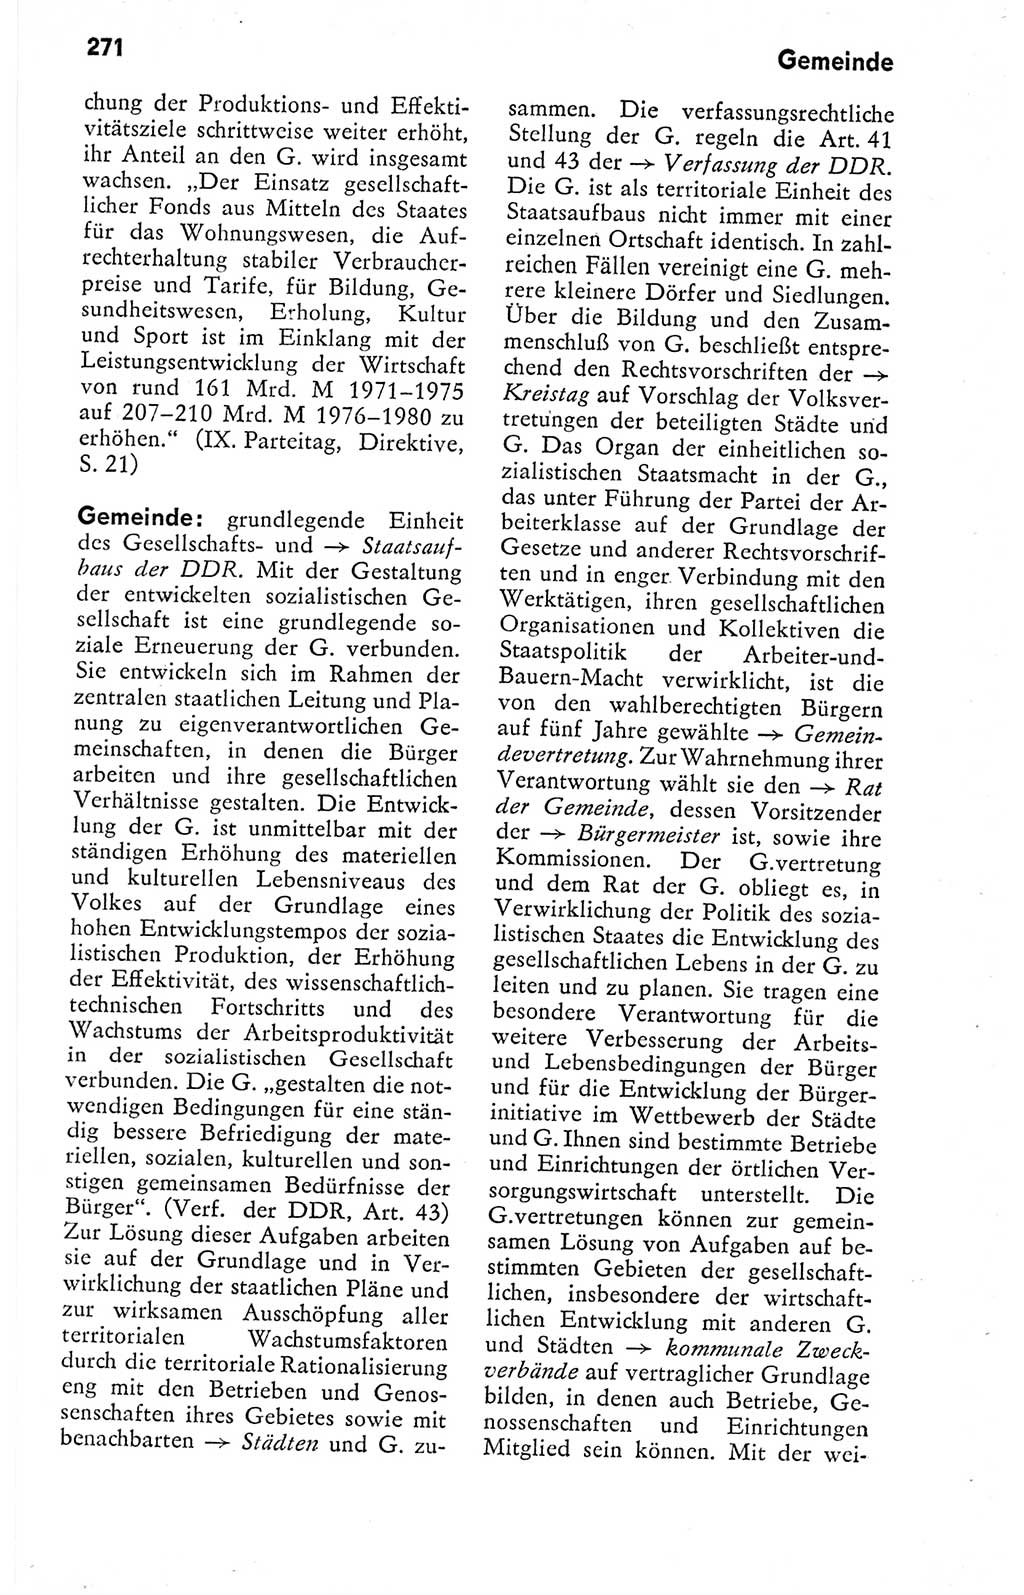 Kleines politisches Wörterbuch [Deutsche Demokratische Republik (DDR)] 1978, Seite 271 (Kl. pol. Wb. DDR 1978, S. 271)